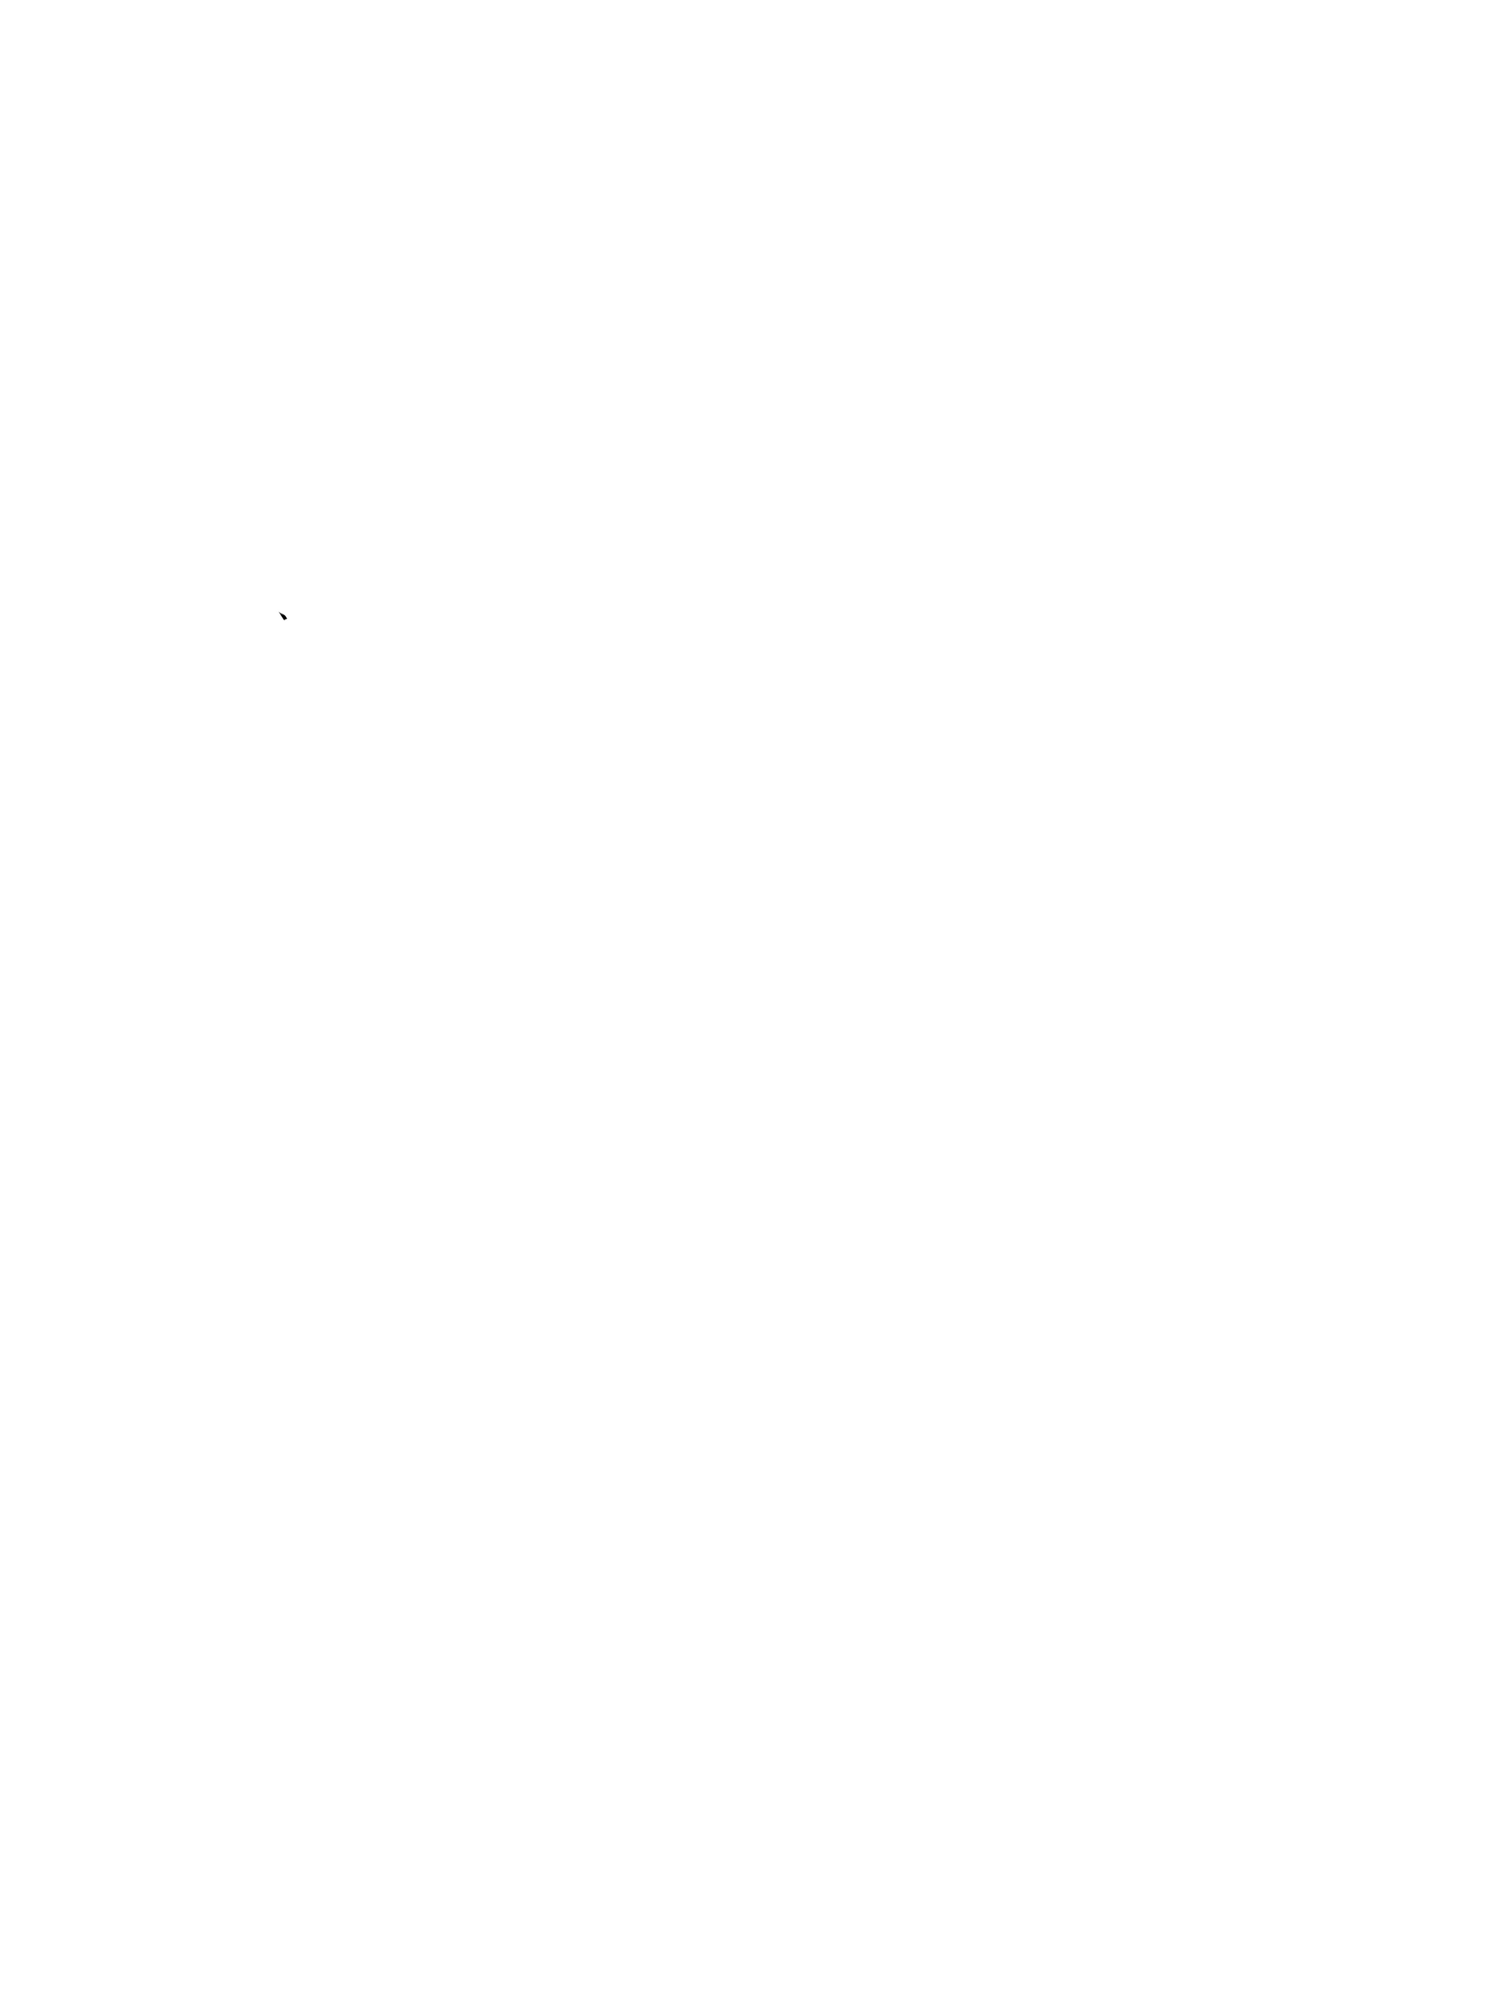 Peculiar Pig Farm